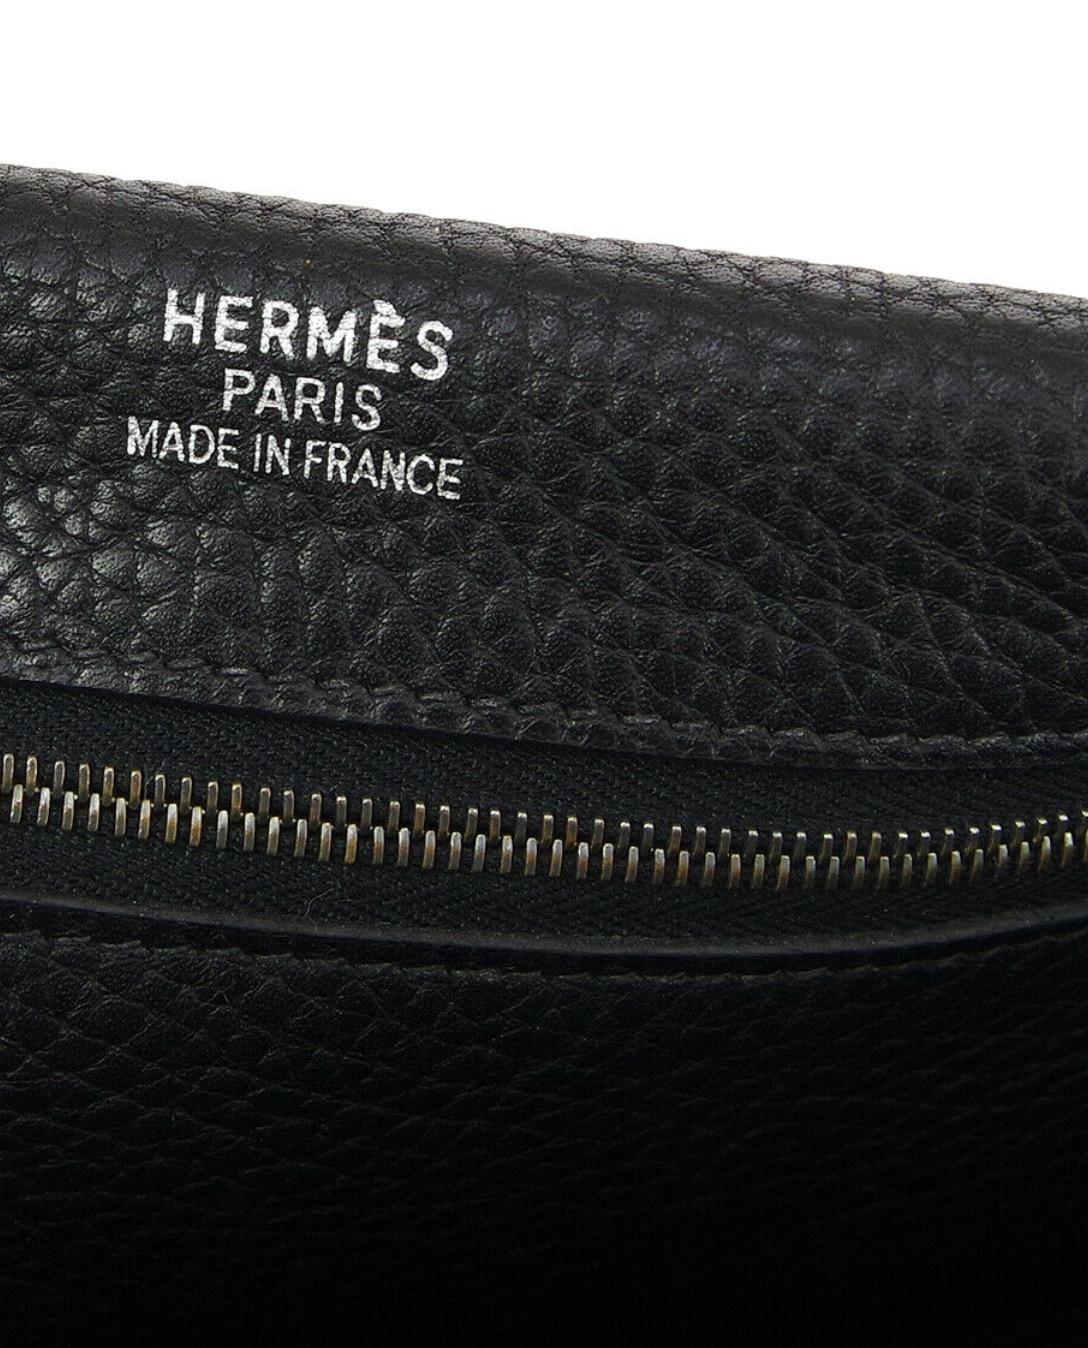 Hermes Black Leather Fabric Carryall Men's Women's Shoulder Crossbody Bag 2